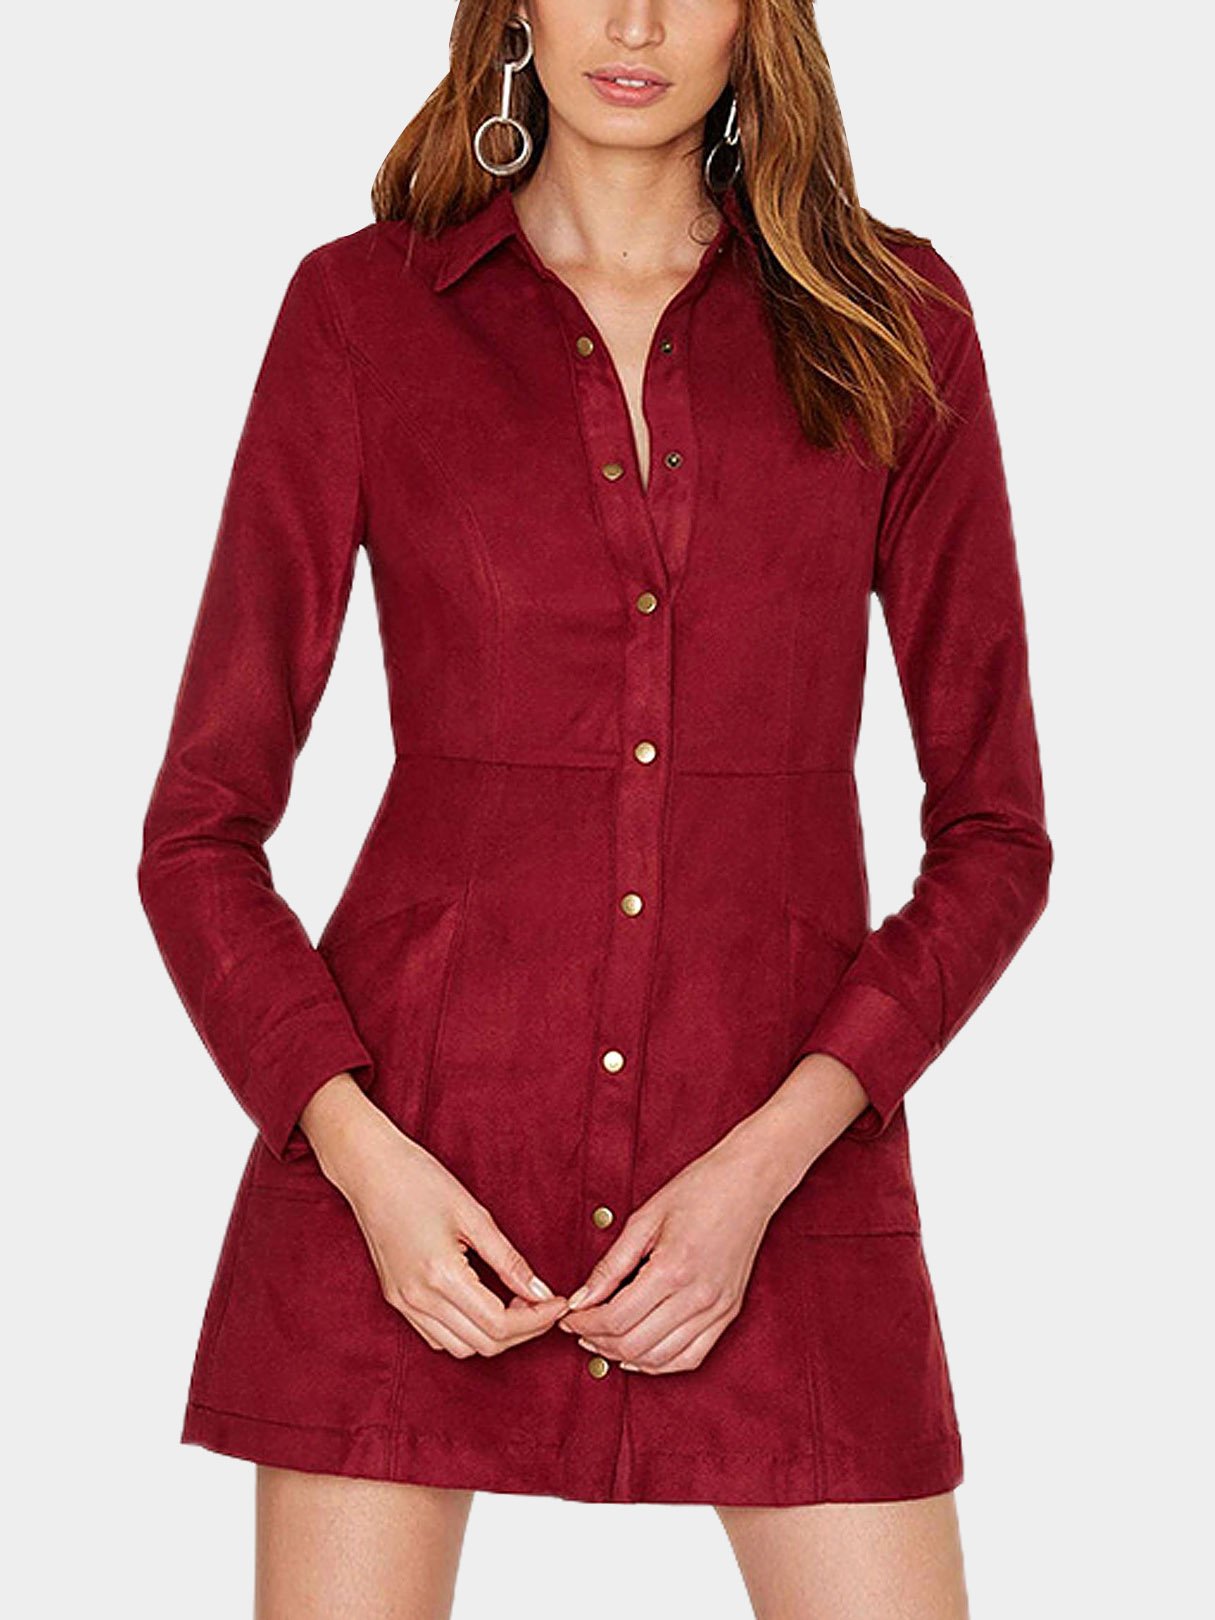 Wholesale Suede Button Up Shirt Dresses